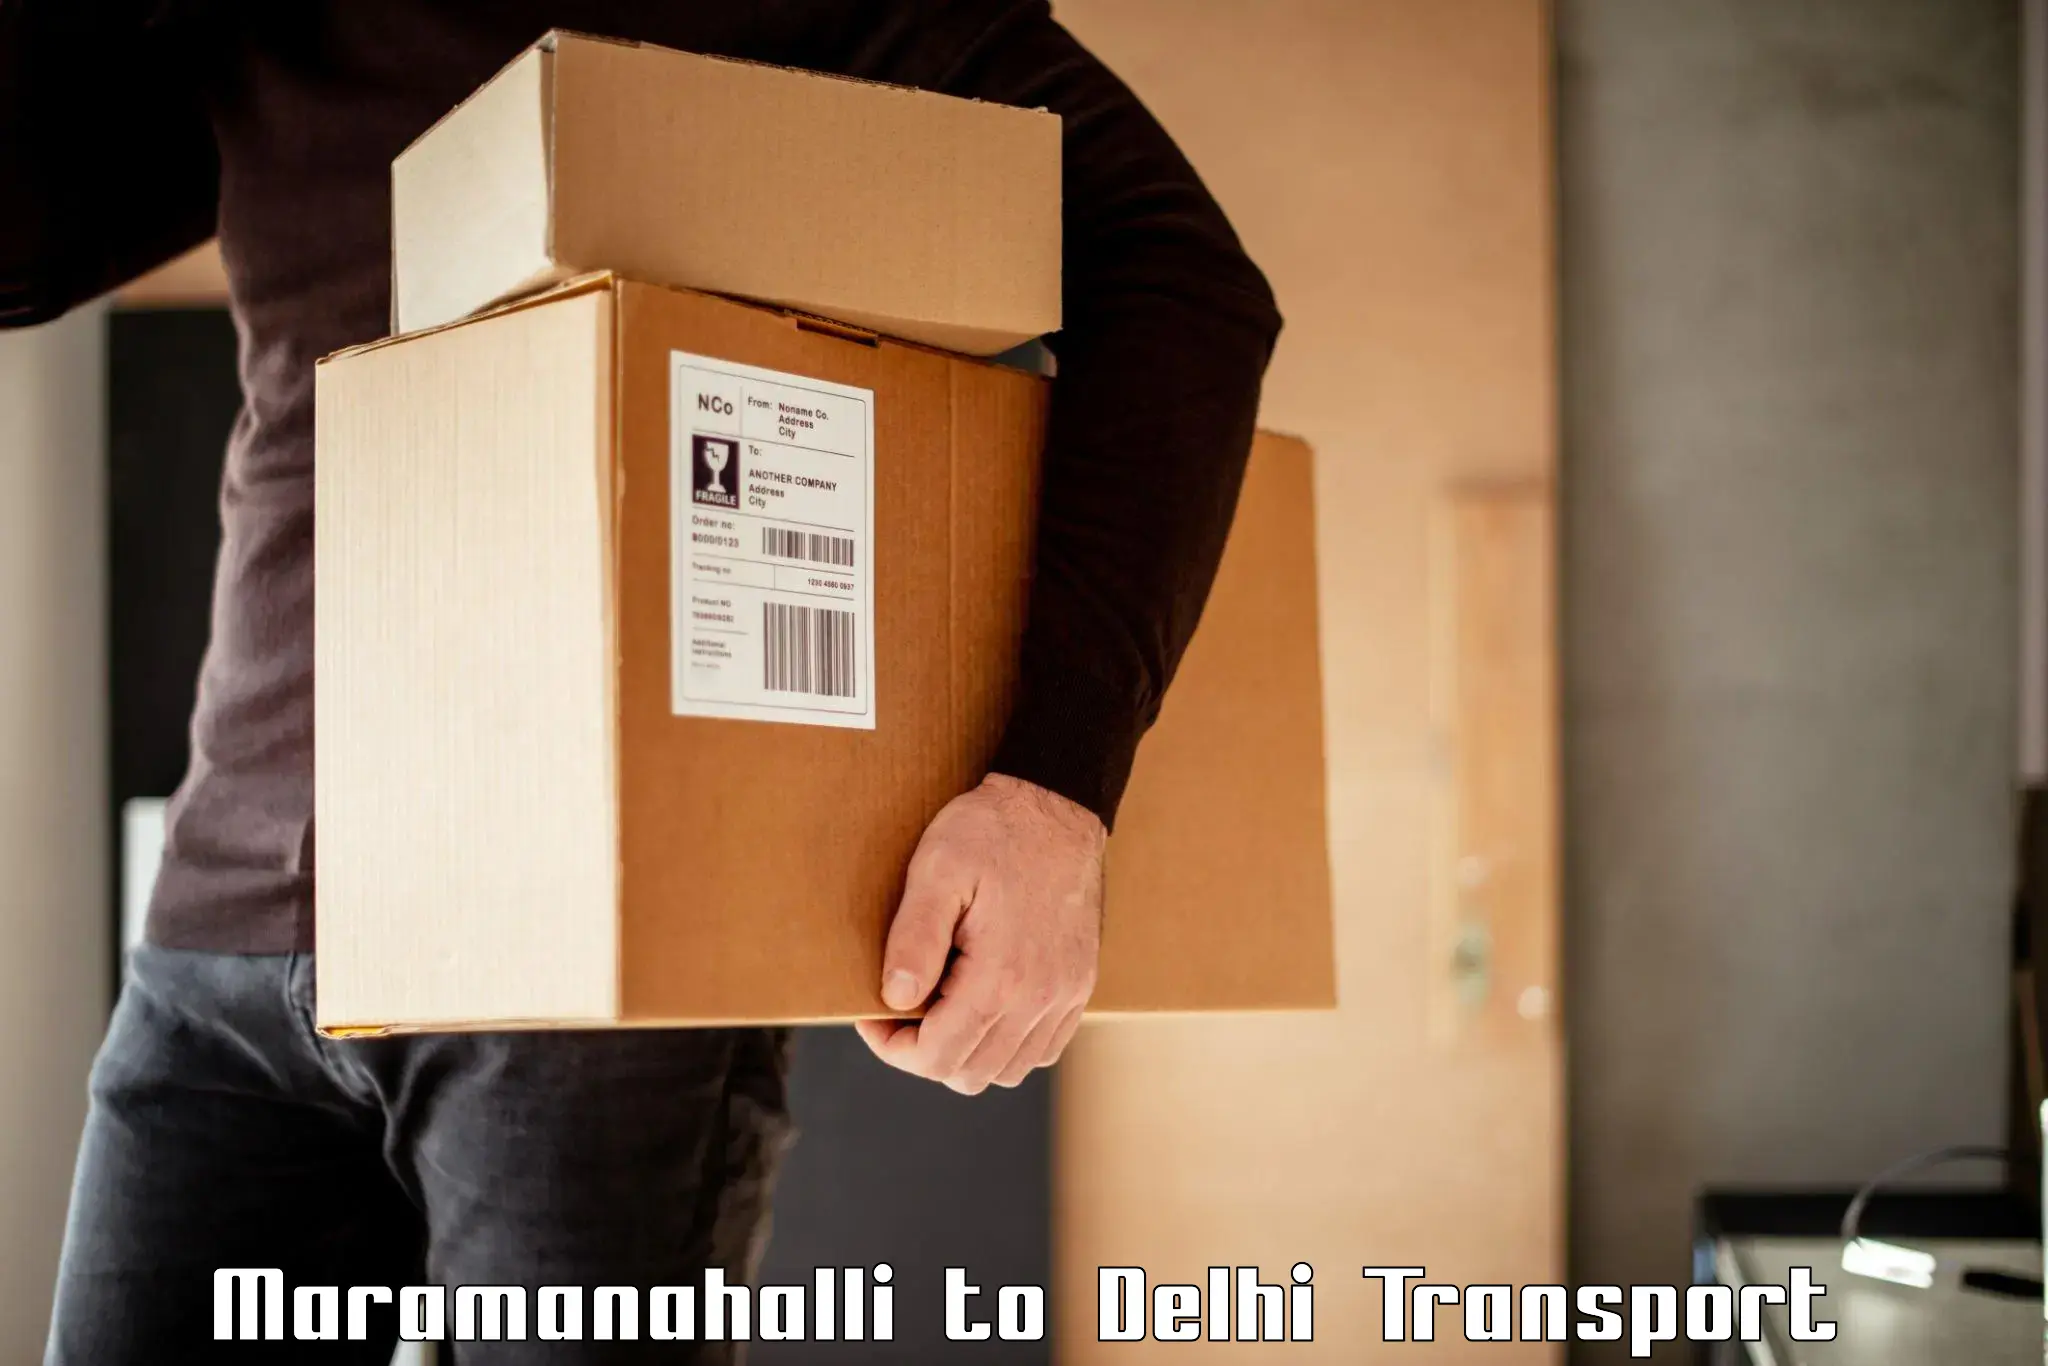 India truck logistics services Maramanahalli to East Delhi